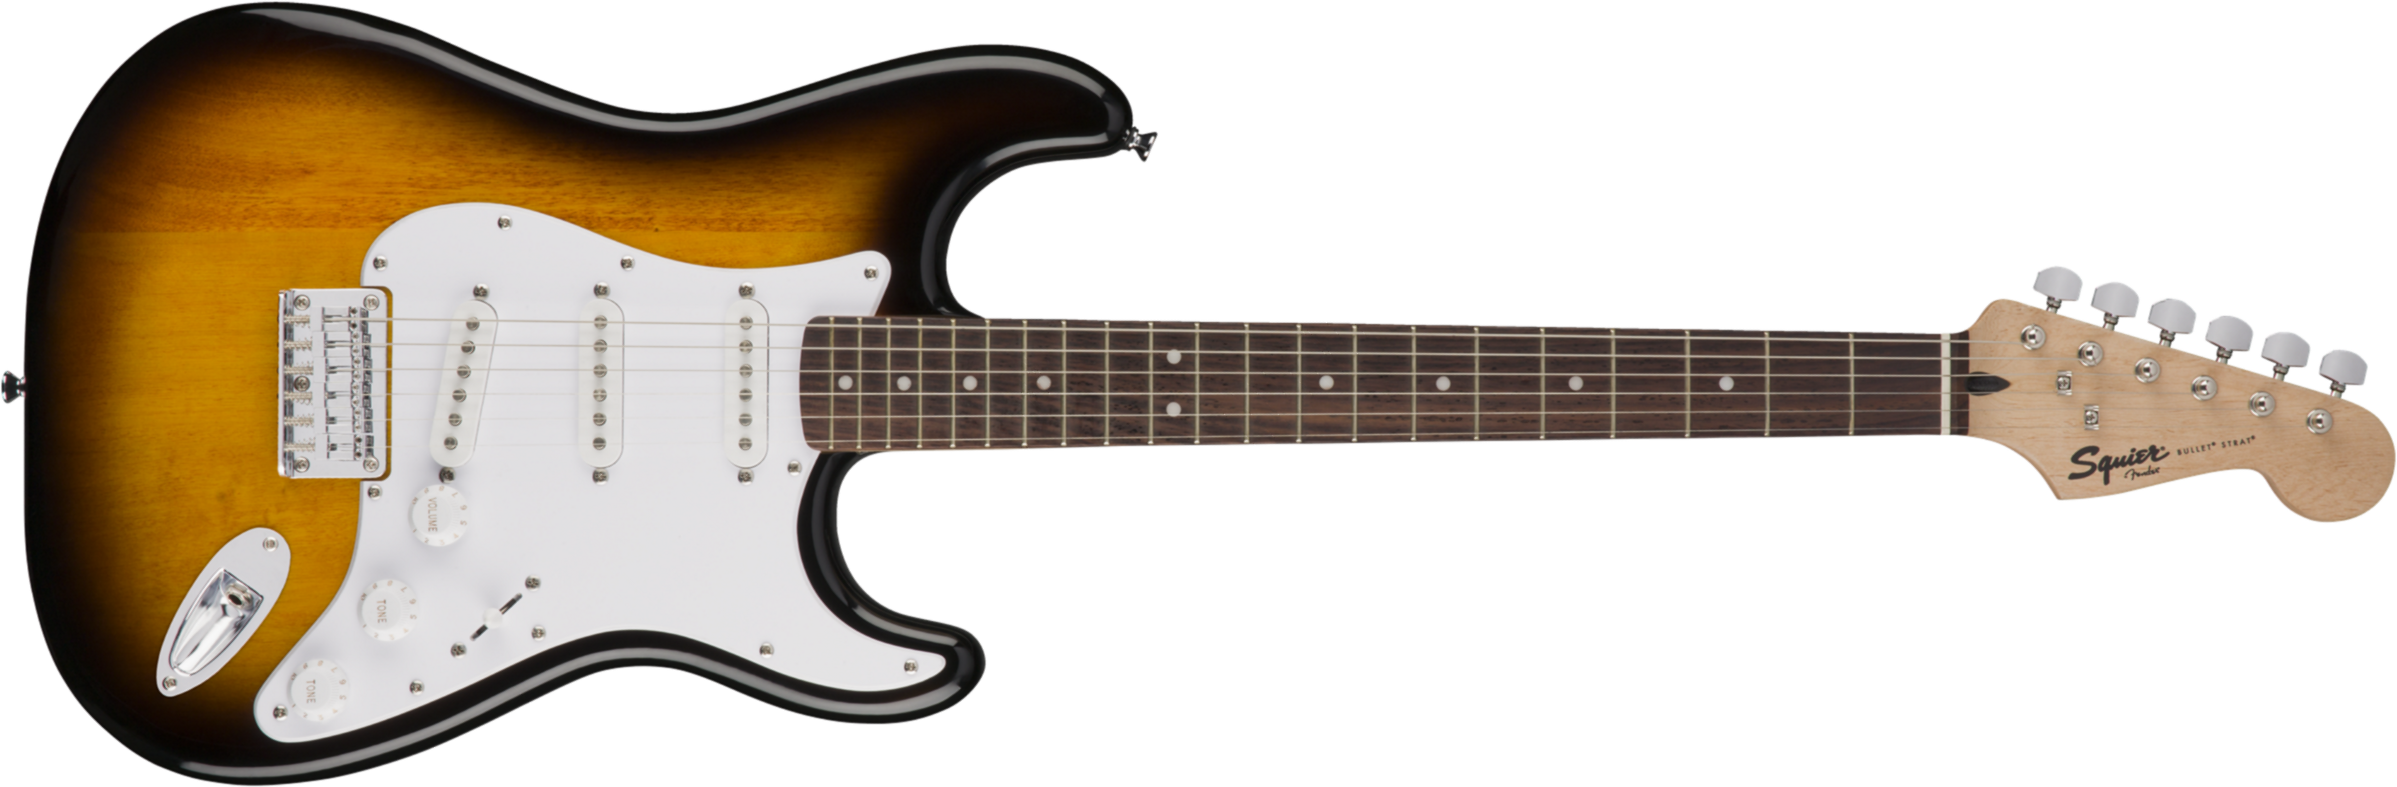 Squier Bullet Stratocaster Ht Sss Lau - Brown Sunburst - Str shape electric guitar - Main picture